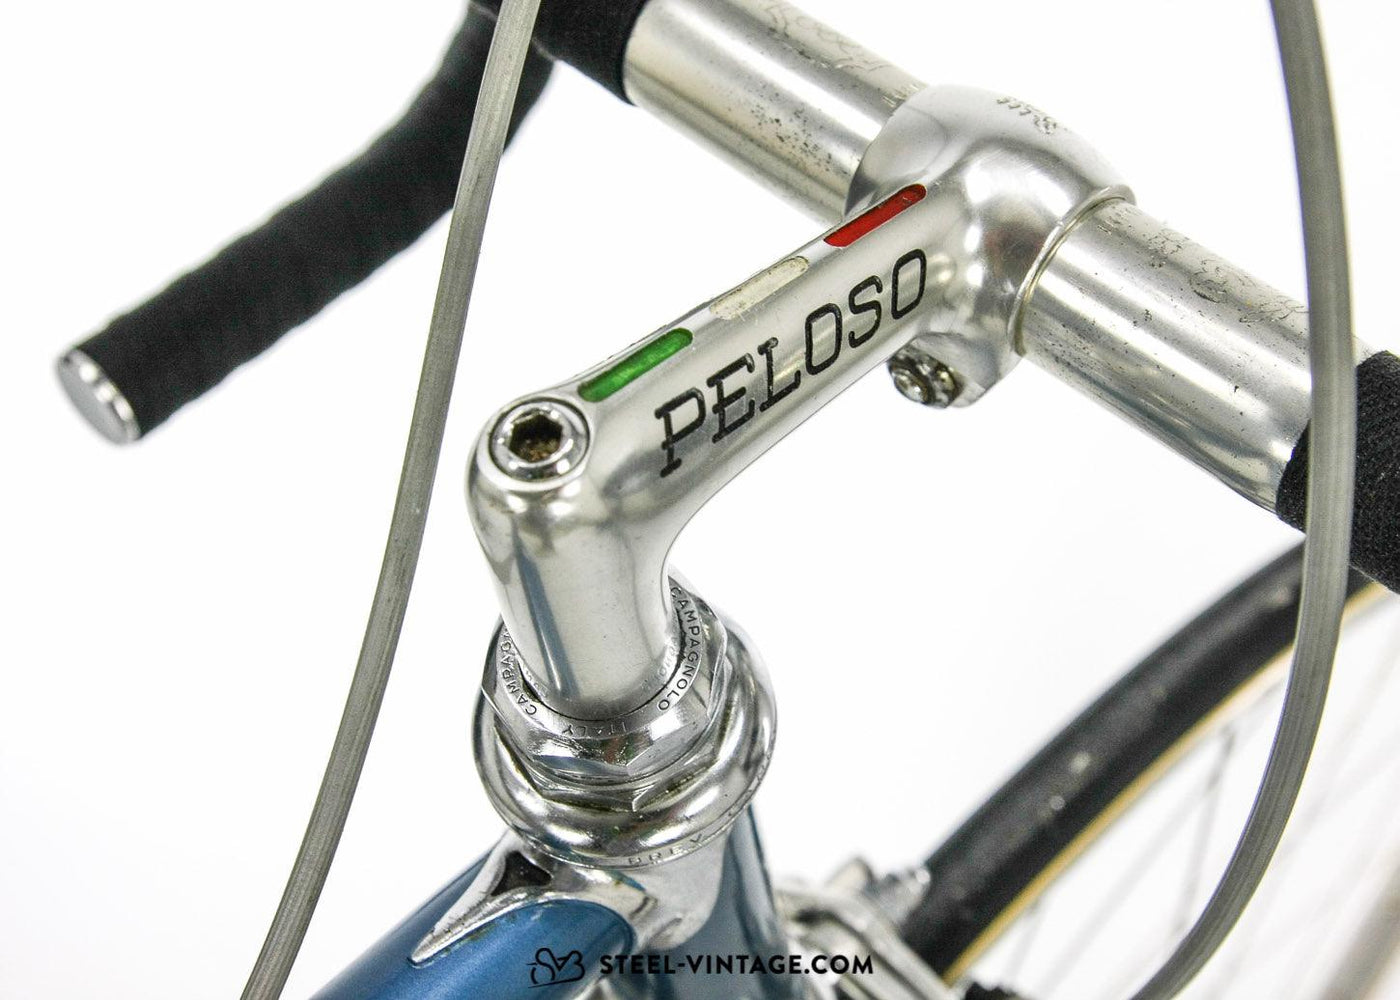 Peloso Special Vintage Racing Bike 1977 - Steel Vintage Bikes